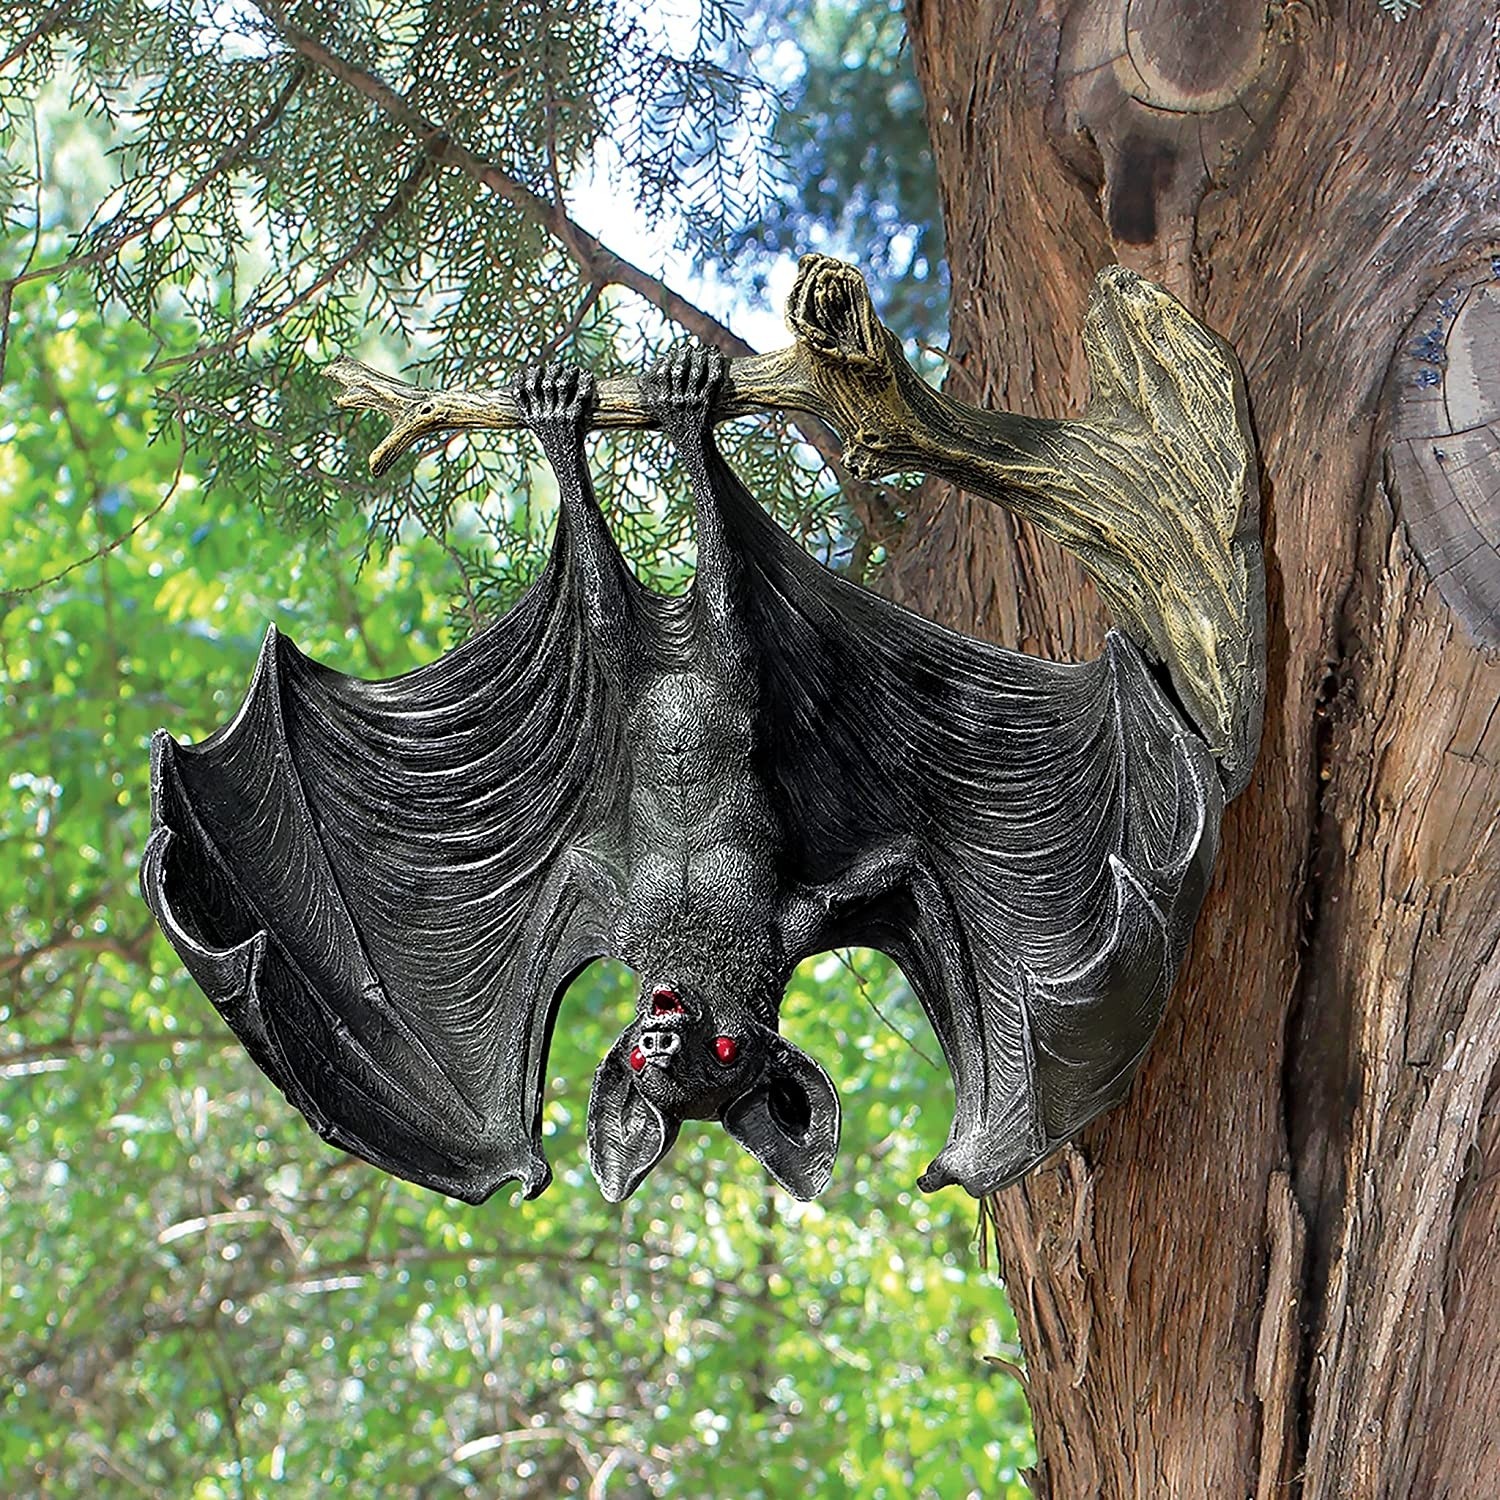 Demon of the Night Vampire Bat Statue